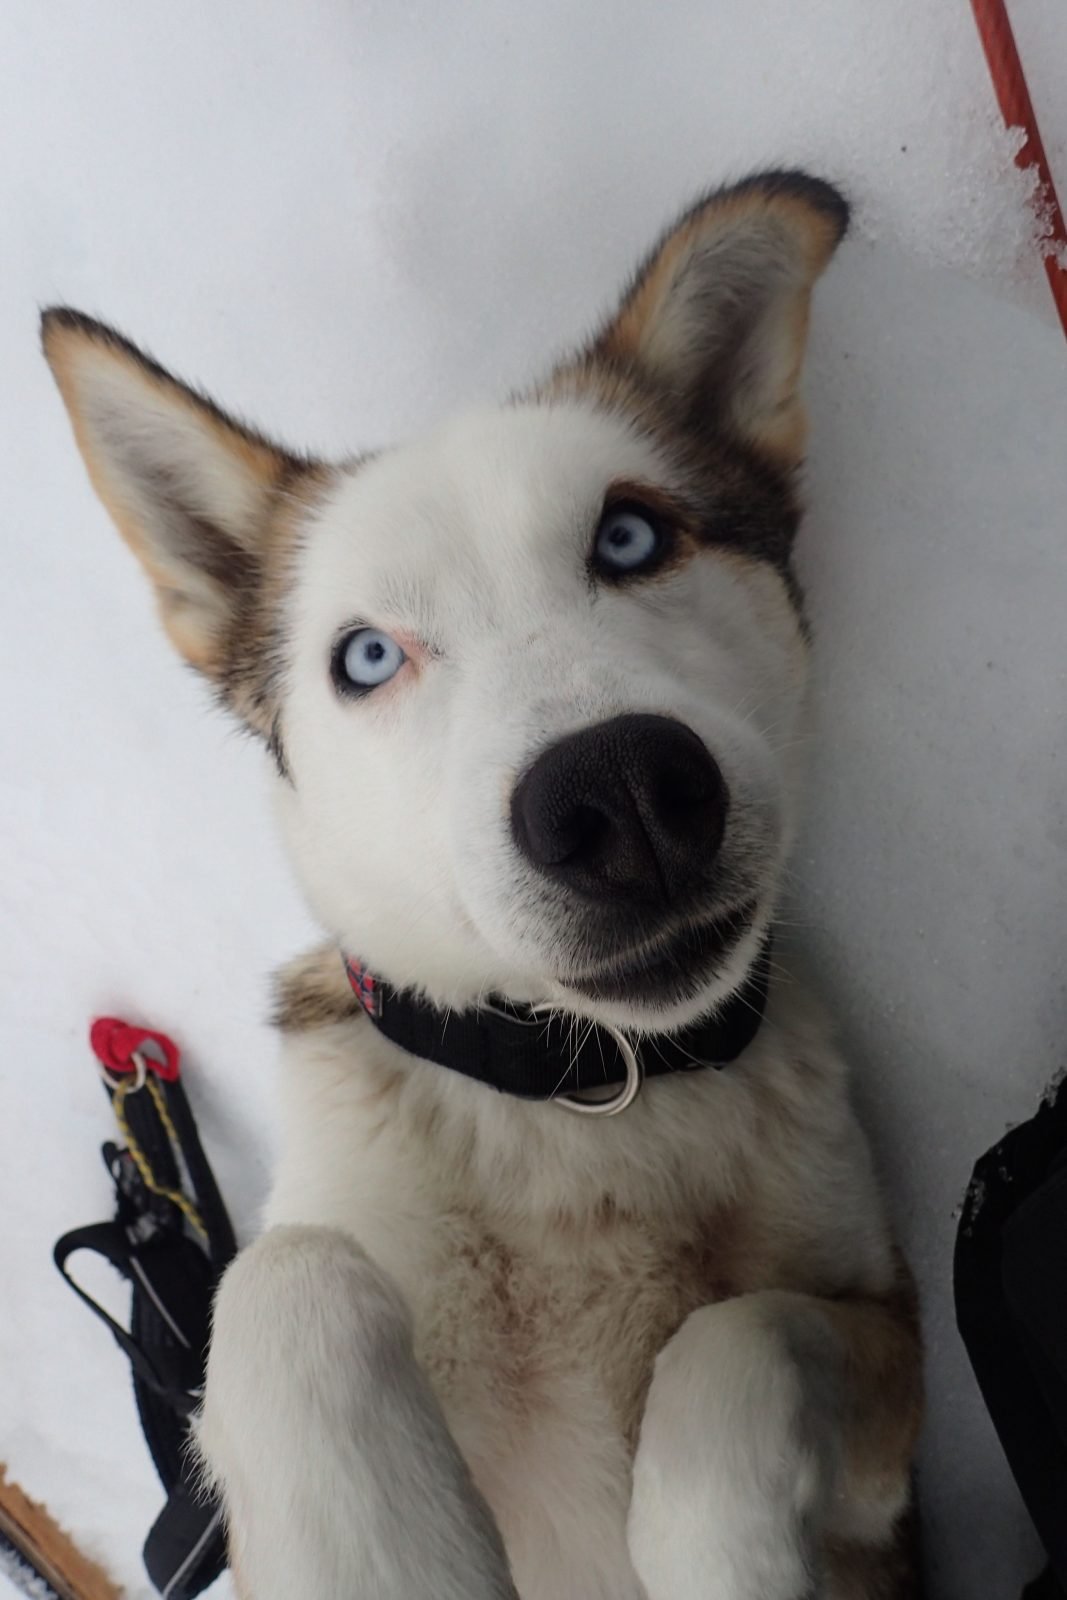 A photo of 'Roya', an Arctic sled dog.